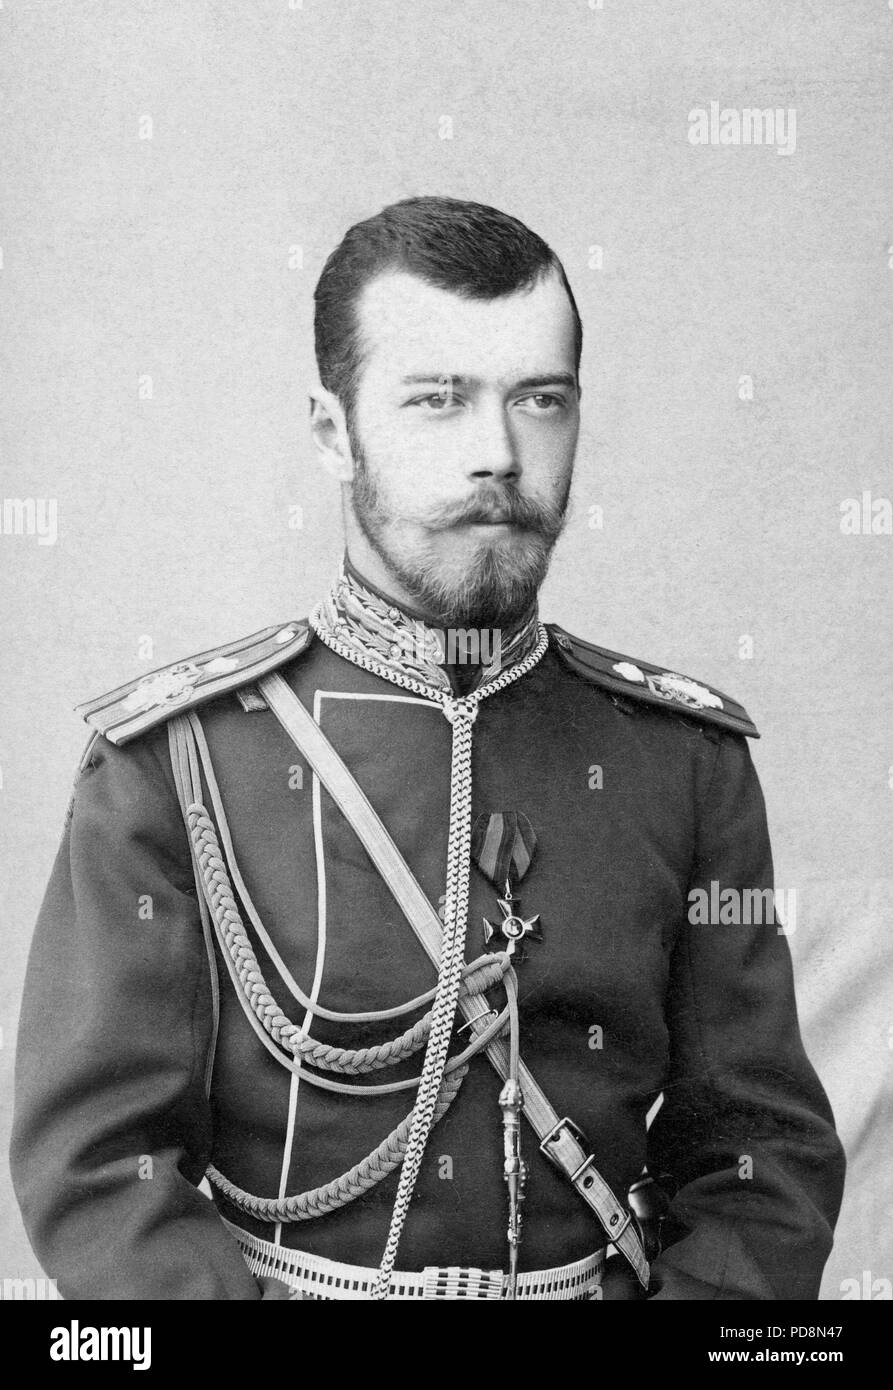 Tsar Nicholas II of Russia. 1868-1918. The last emperor of Russia. Stock Photo